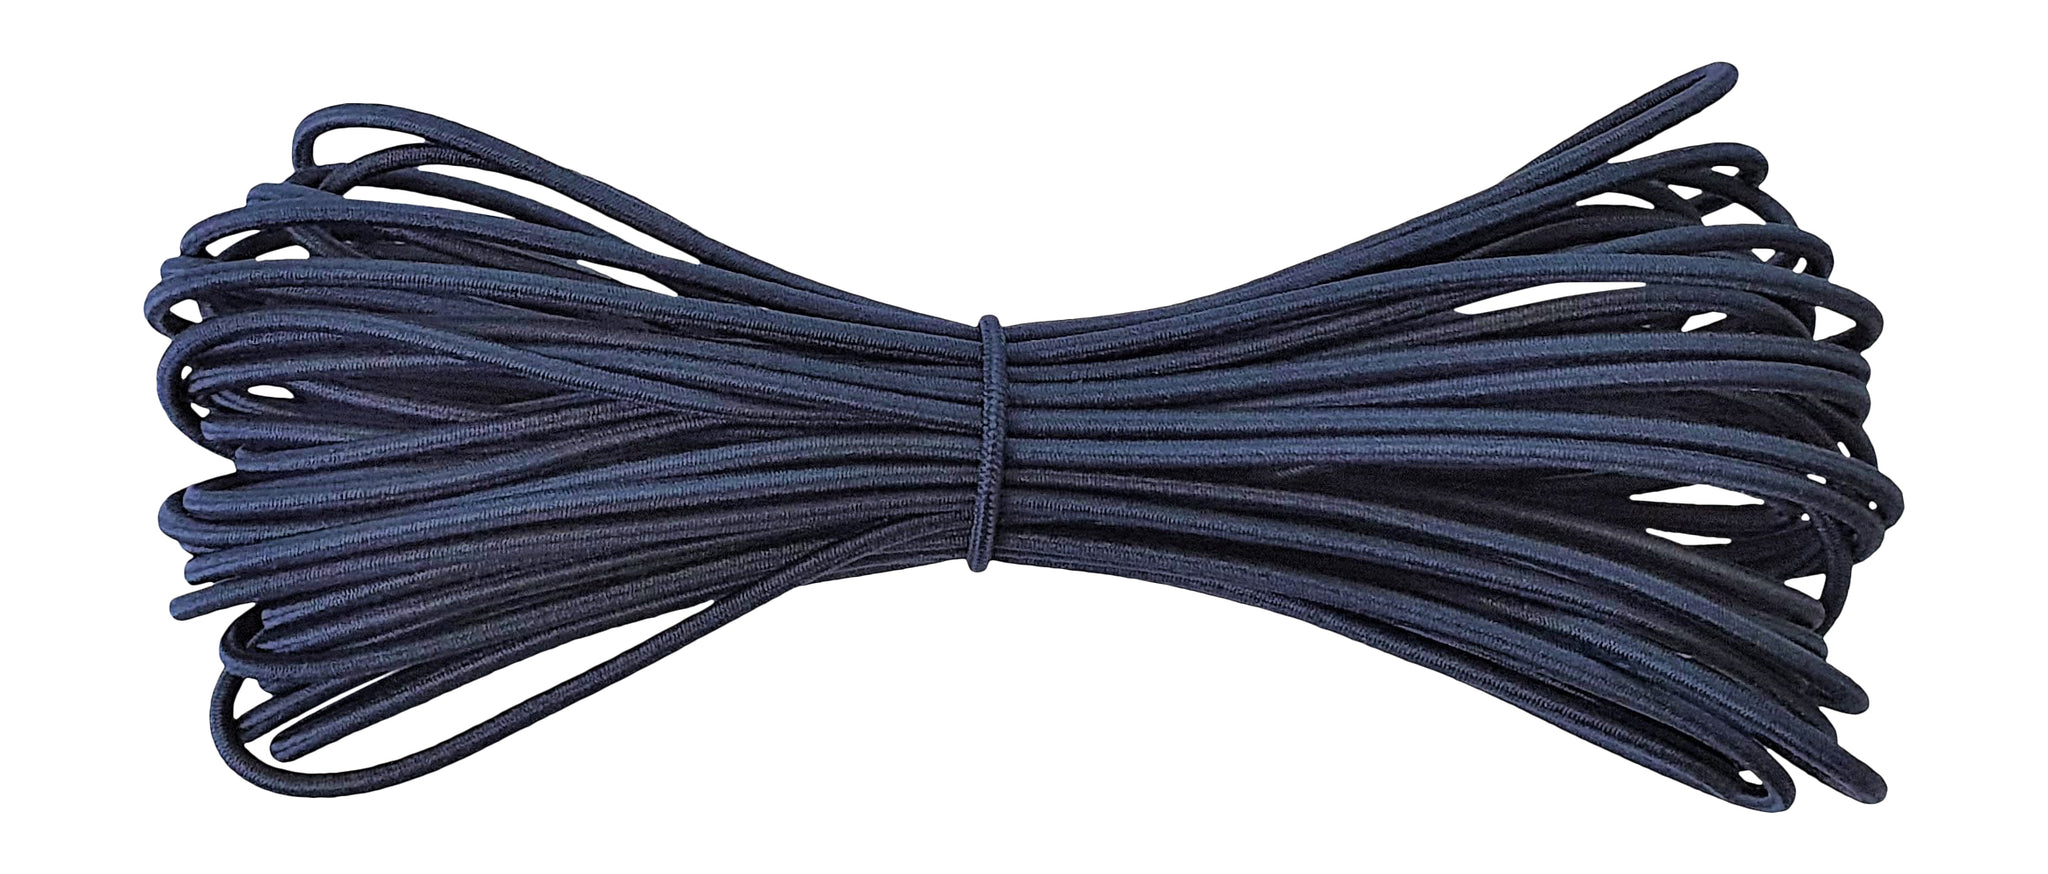 Fabmania round elastic cord sahara navy 2 mm